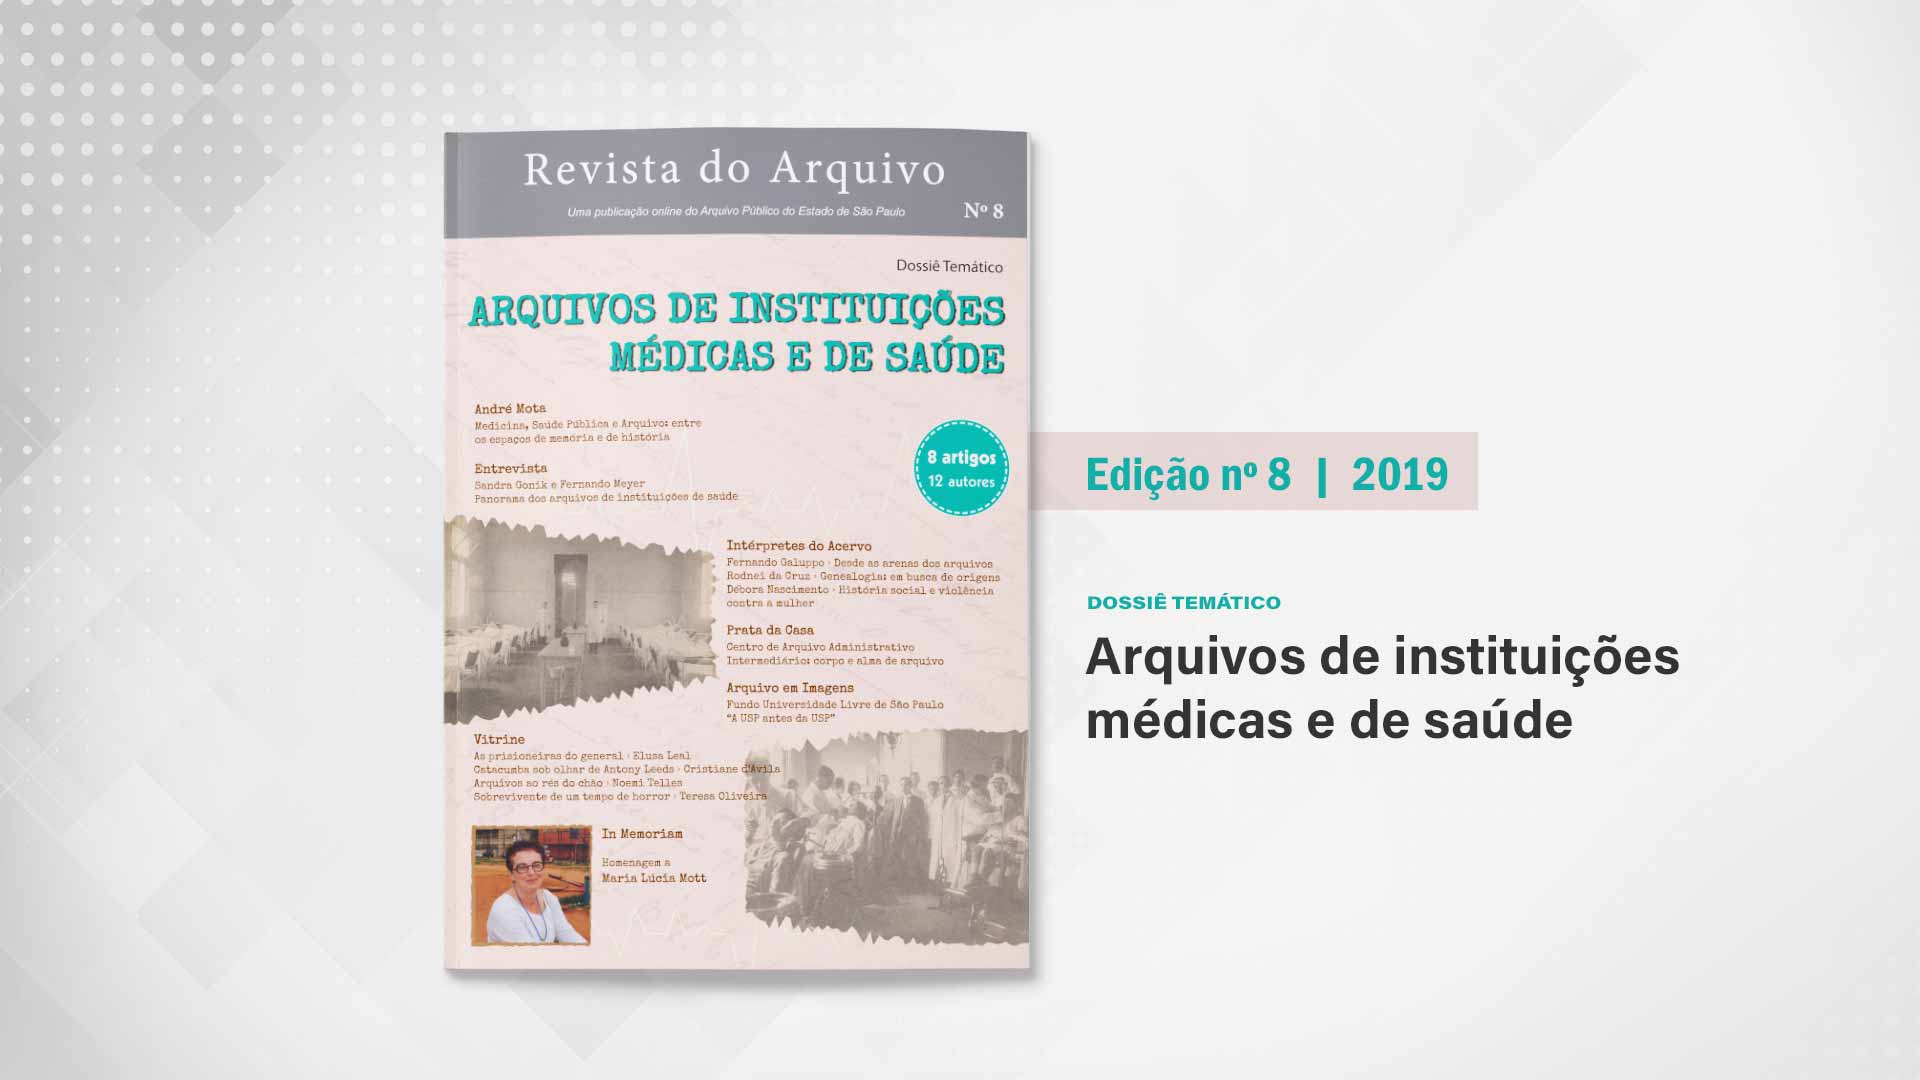 Revista do Arquivo n. 8 (2019): Arquivos de instituições médicas e de saúde